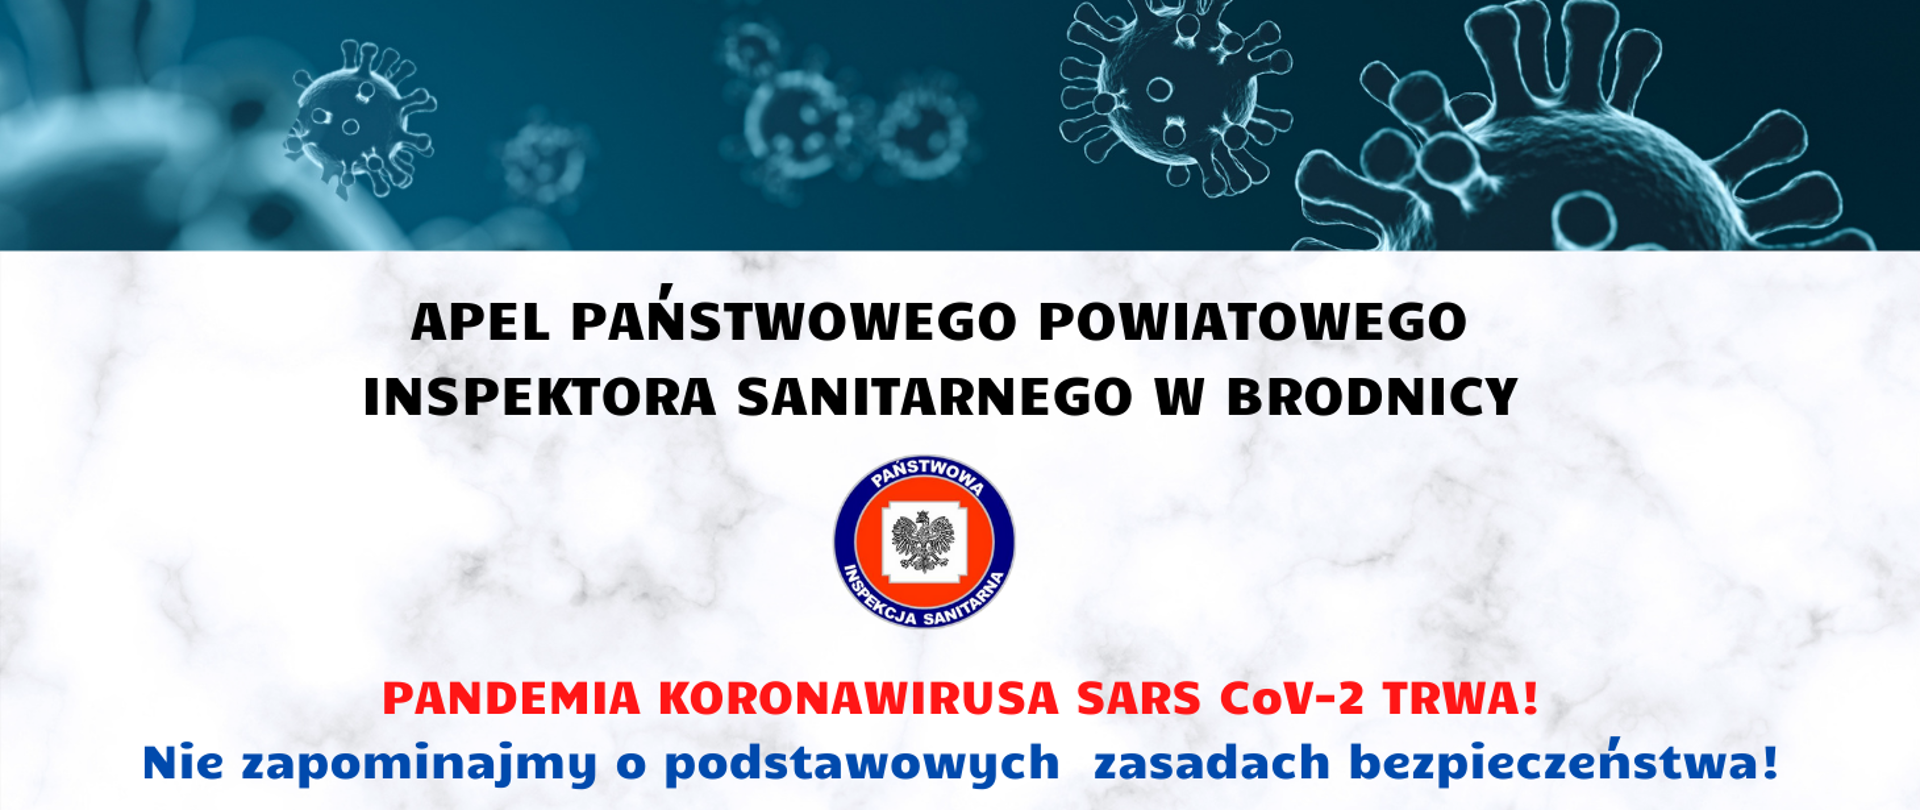 Apel Państwowego Powiatowego Inspektora Sanitarnego w Brodnicy. Pandemia koronawirusa SARS CoV-2 trwa! Nie zapominajmy o podstawowych zasadach bezpieczeństwa!